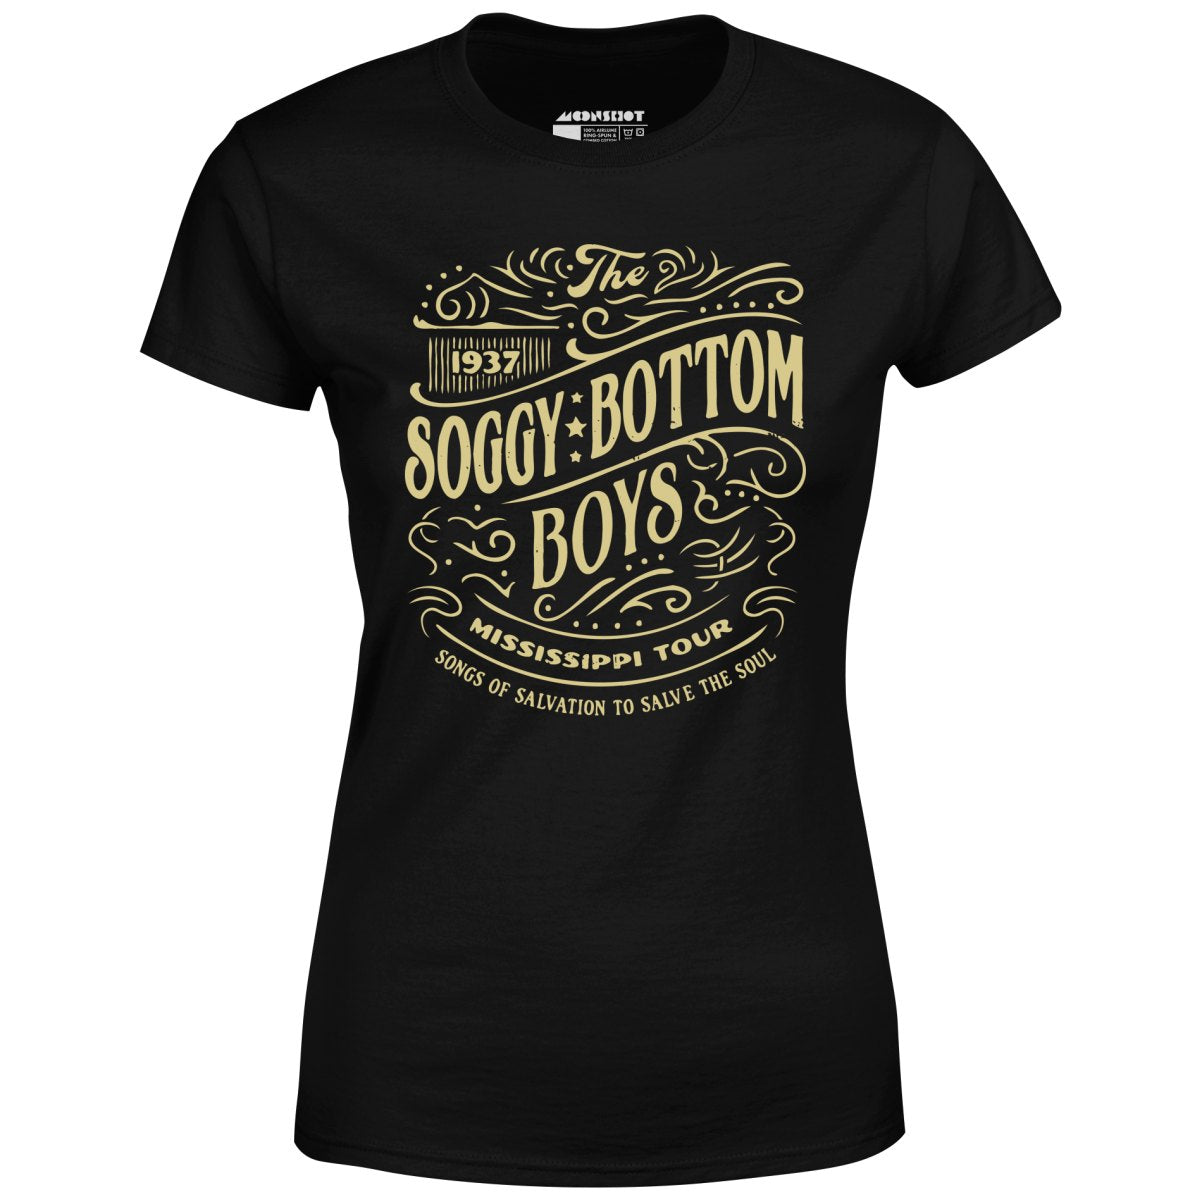 Soggy Bottom Boys - 1937 Mississippi Tour - Women's T-Shirt